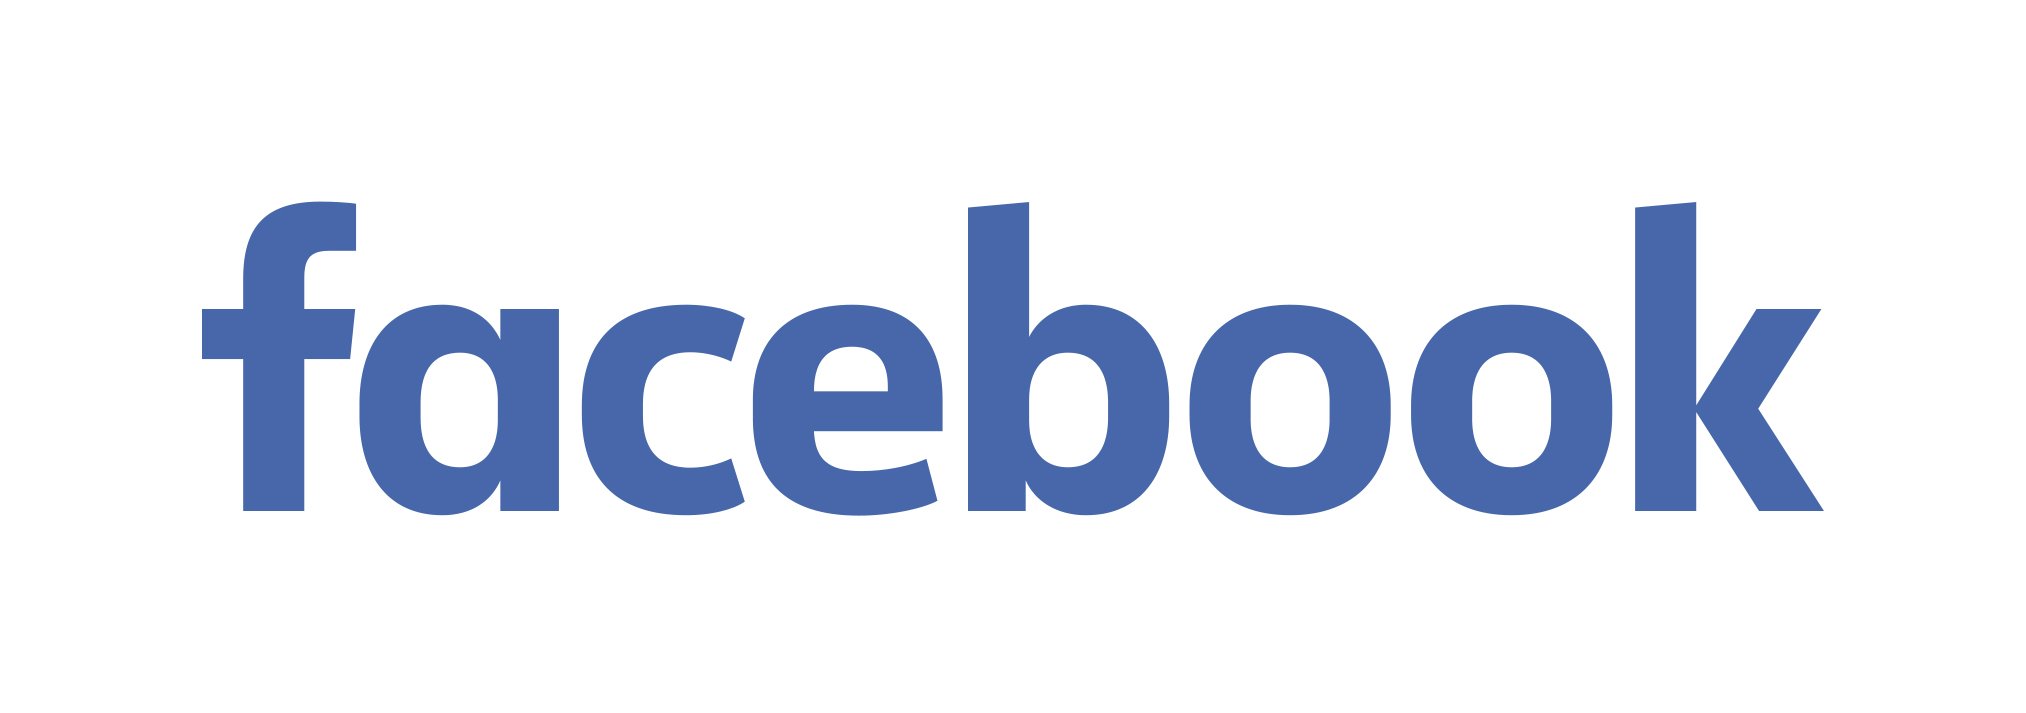 Facebook logo wordmark